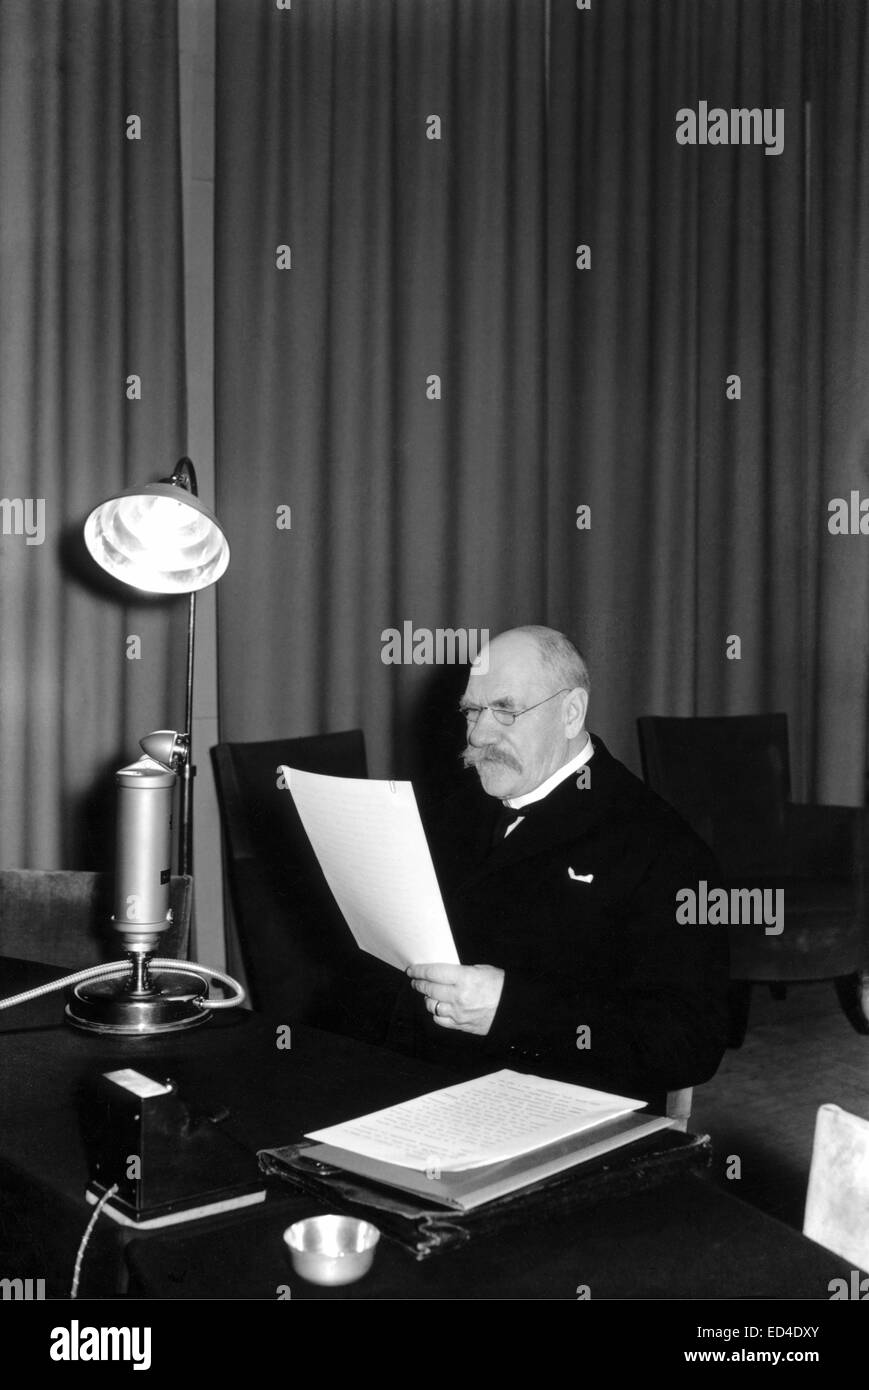 President Pehr Evind Svinhufvud talking on the radio, 1930s Stock Photo